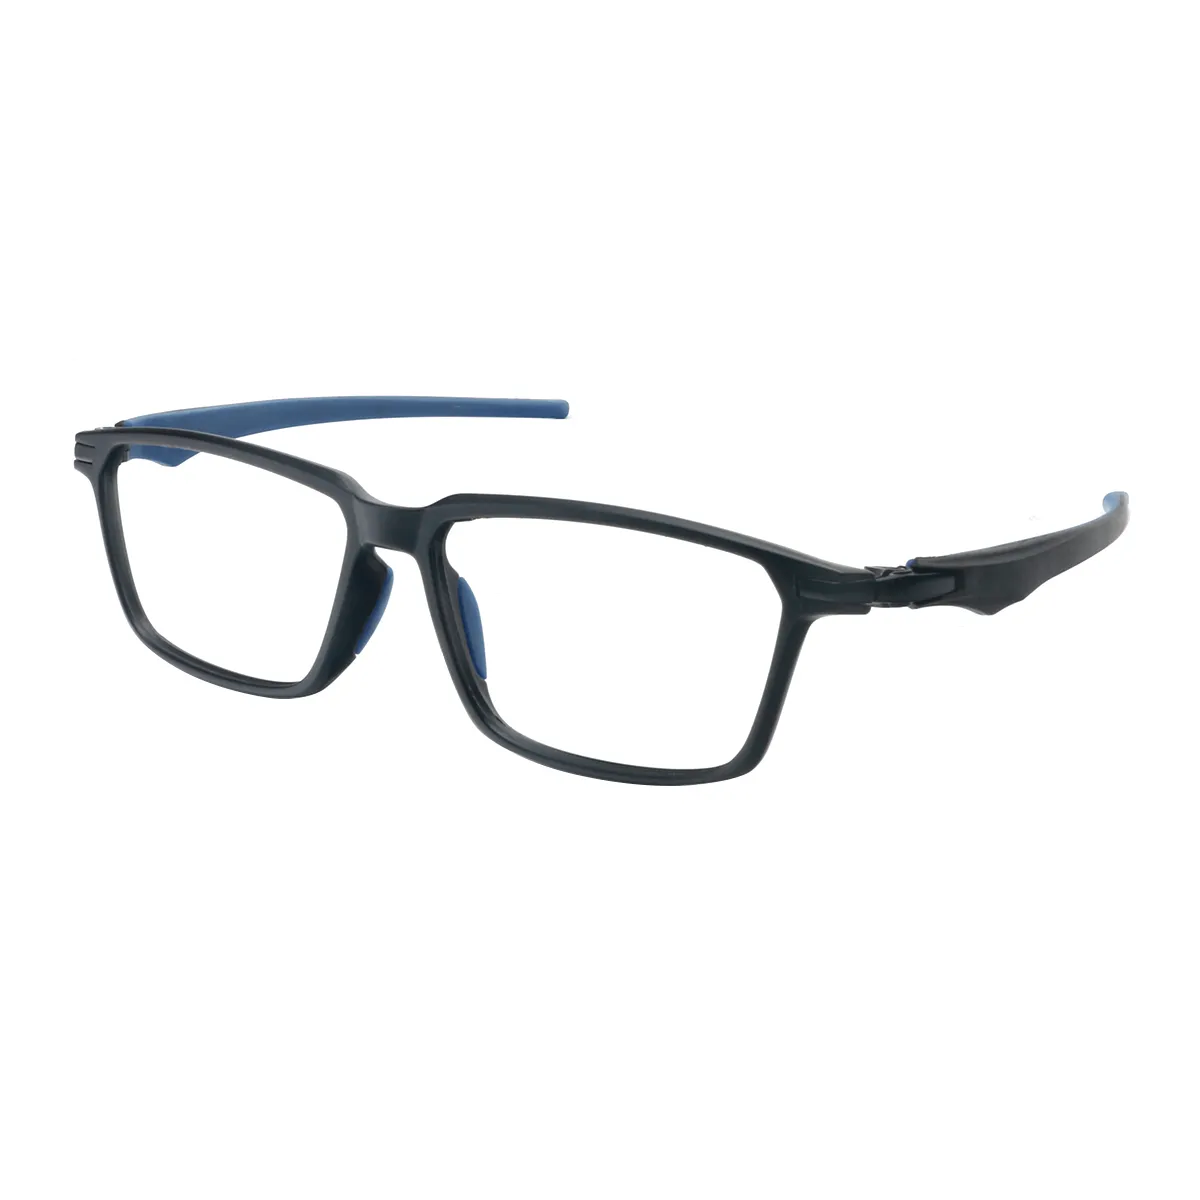 Valentin - Rectangle Blue Glasses for Men & Women